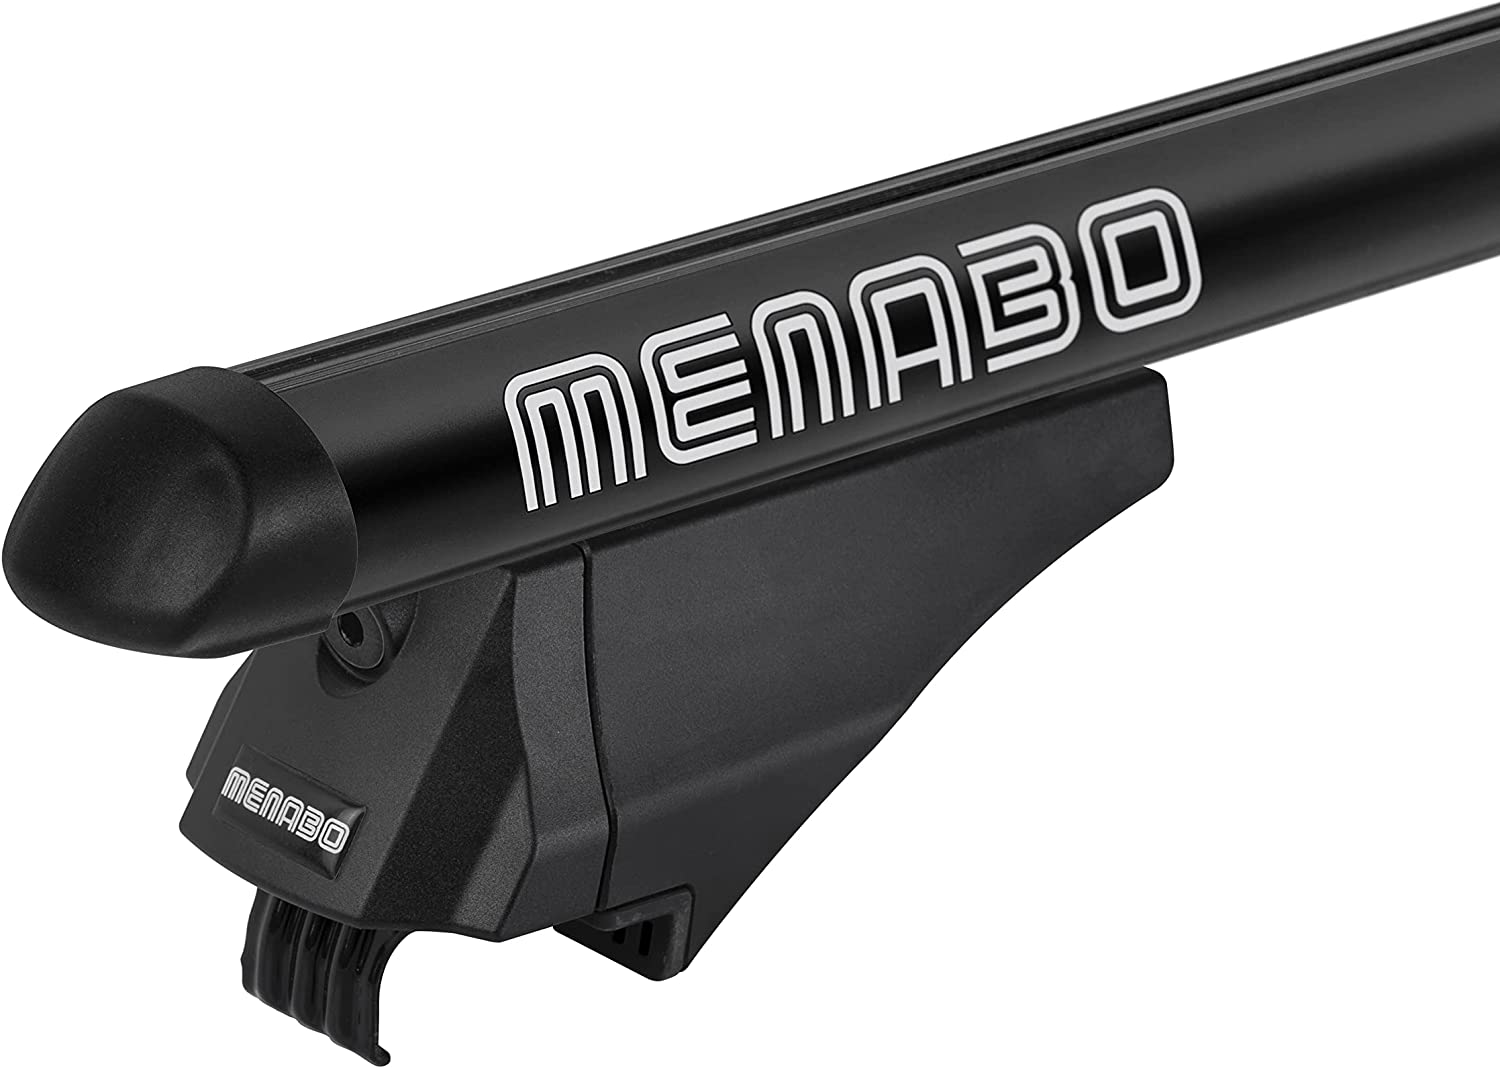 MENABO - Barre portatutto ricondizionate TIGER XL BLACK in alluminio per Mercedes GLC (X253) 5 porte anno 15>20